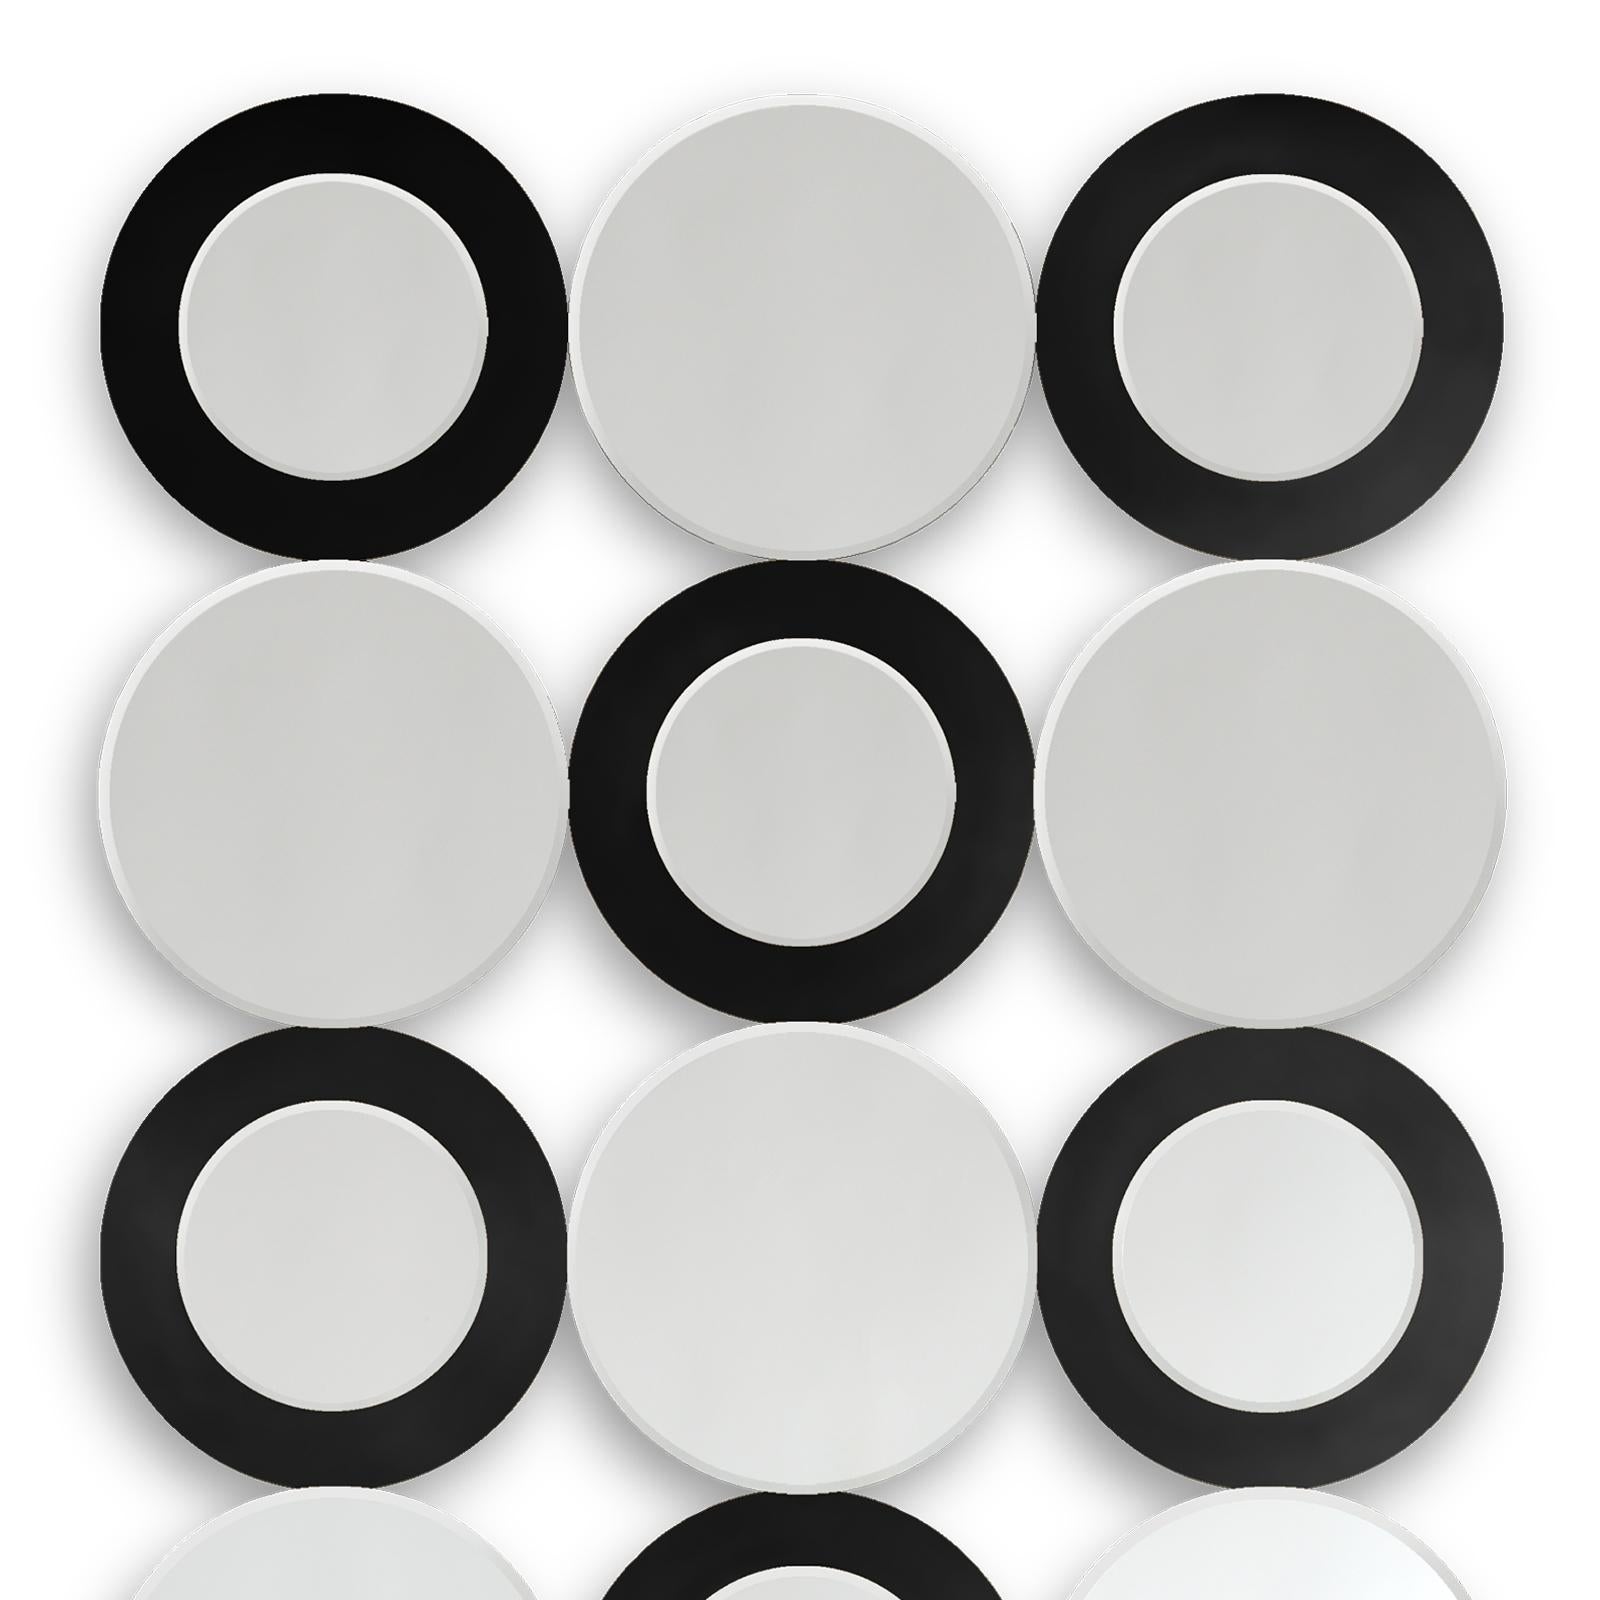 Anneaux de miroir avec 18 verres ronds transparents.
Avec anneaux en finition noire sur 9 miroirs.
Également disponible avec des anneaux en finition dorée sur 9 miroirs.